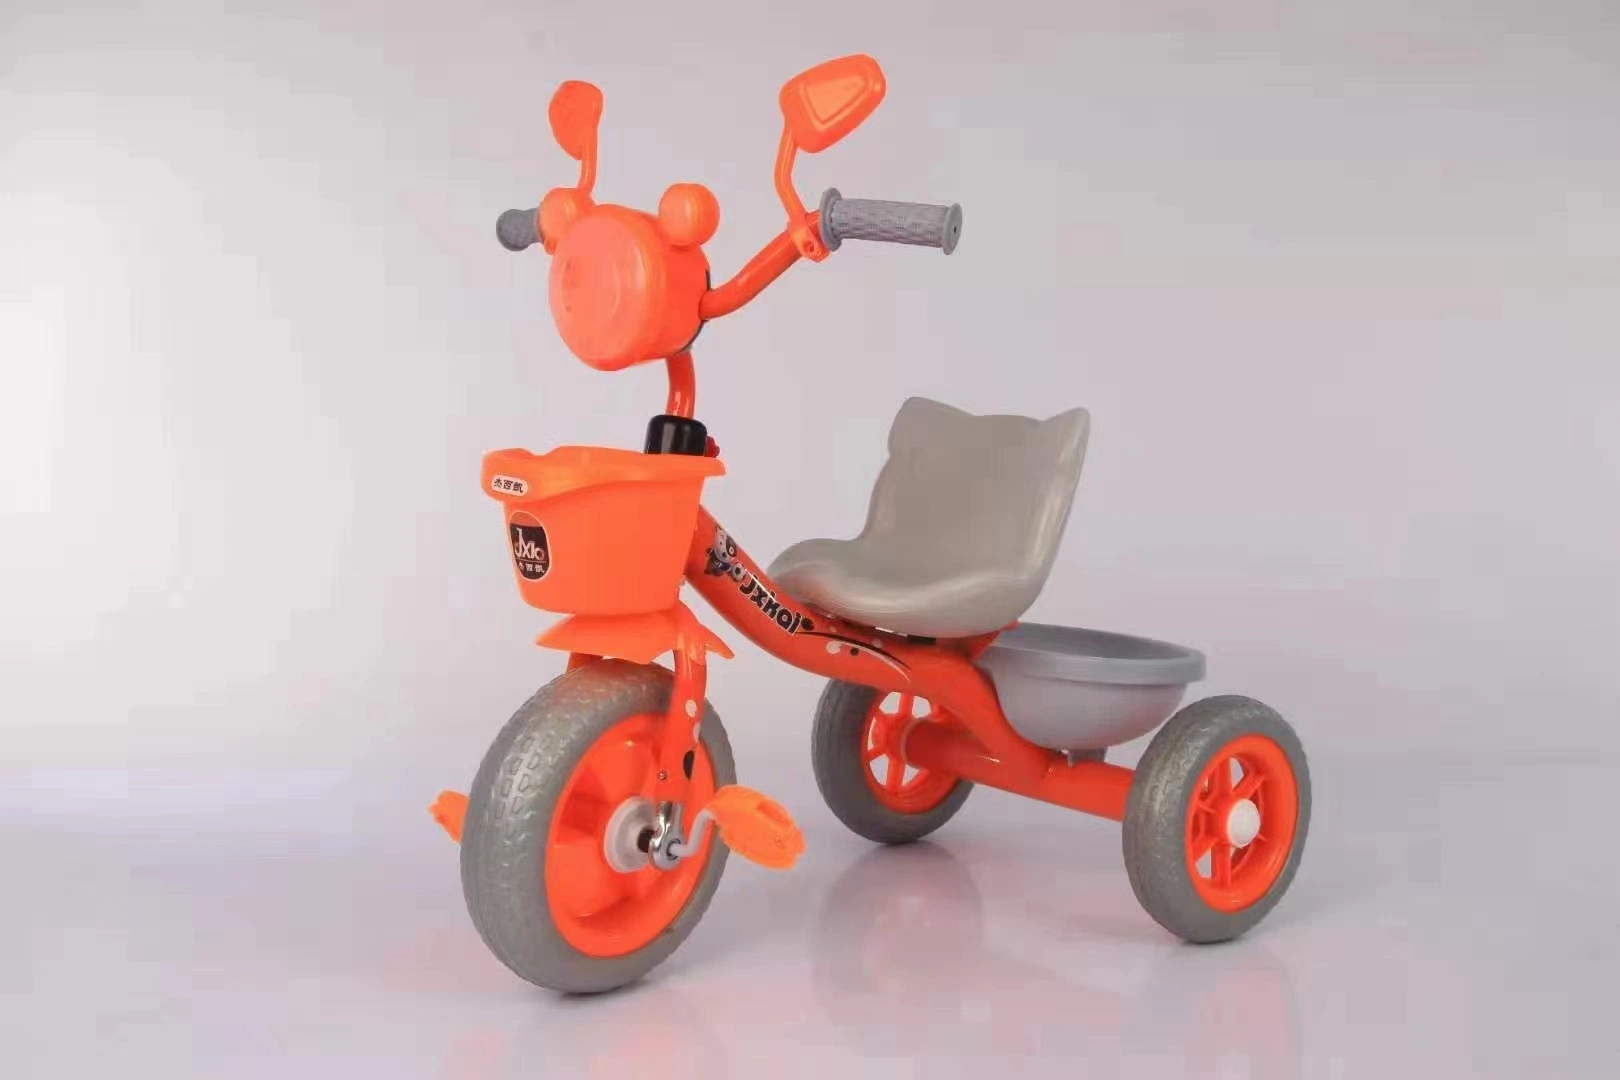 Nuevo diseño de bebé Tricycle de acero niños de juguete con música / plástico Tricycle Para niños 1-6 años/Biciclos baratos